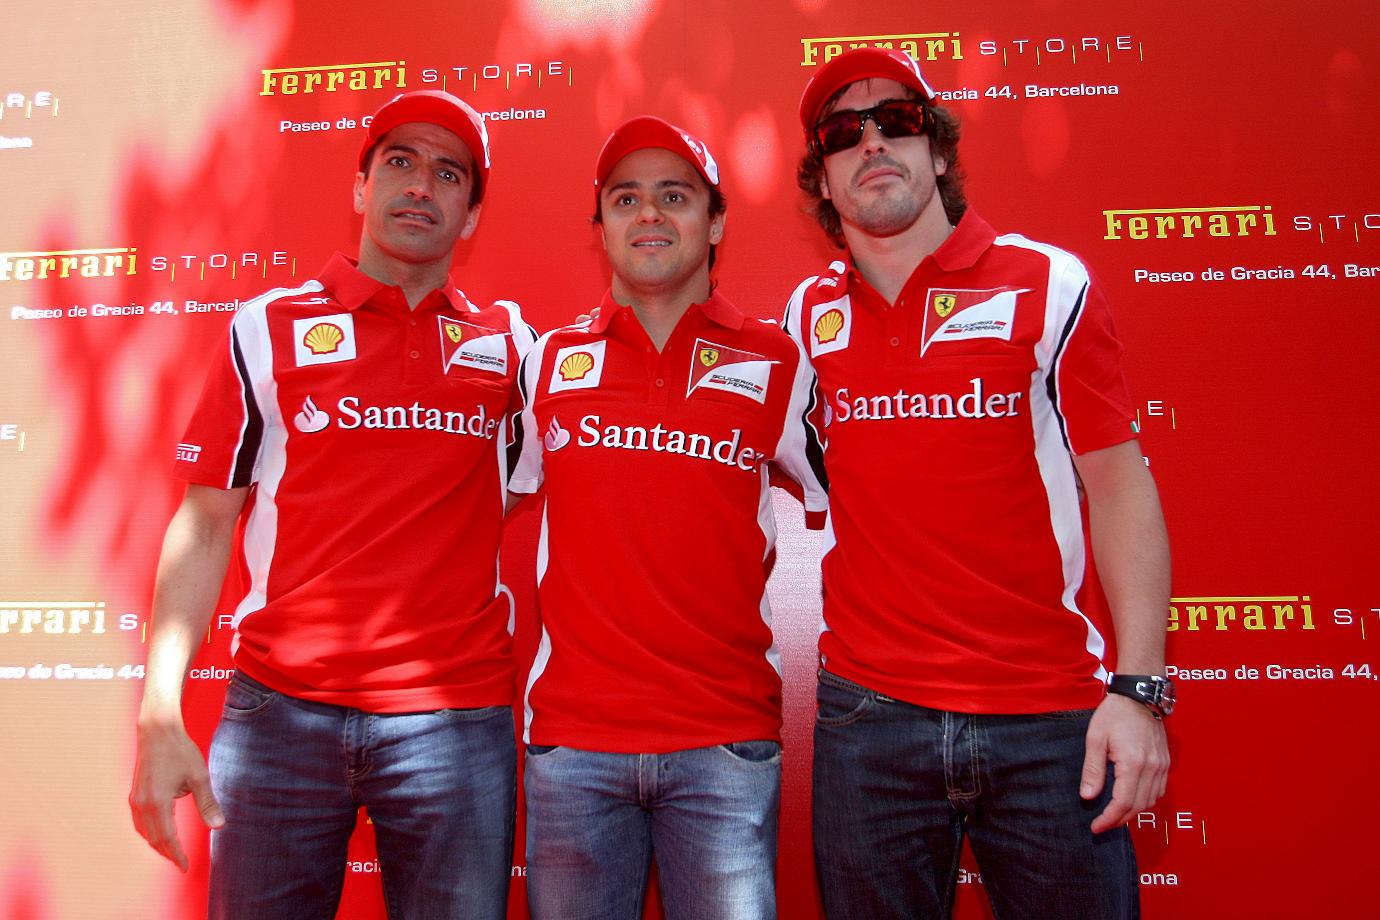 F1 Felipe Massa E Fernando Alonso posam para fotos com roupas da Ferrari